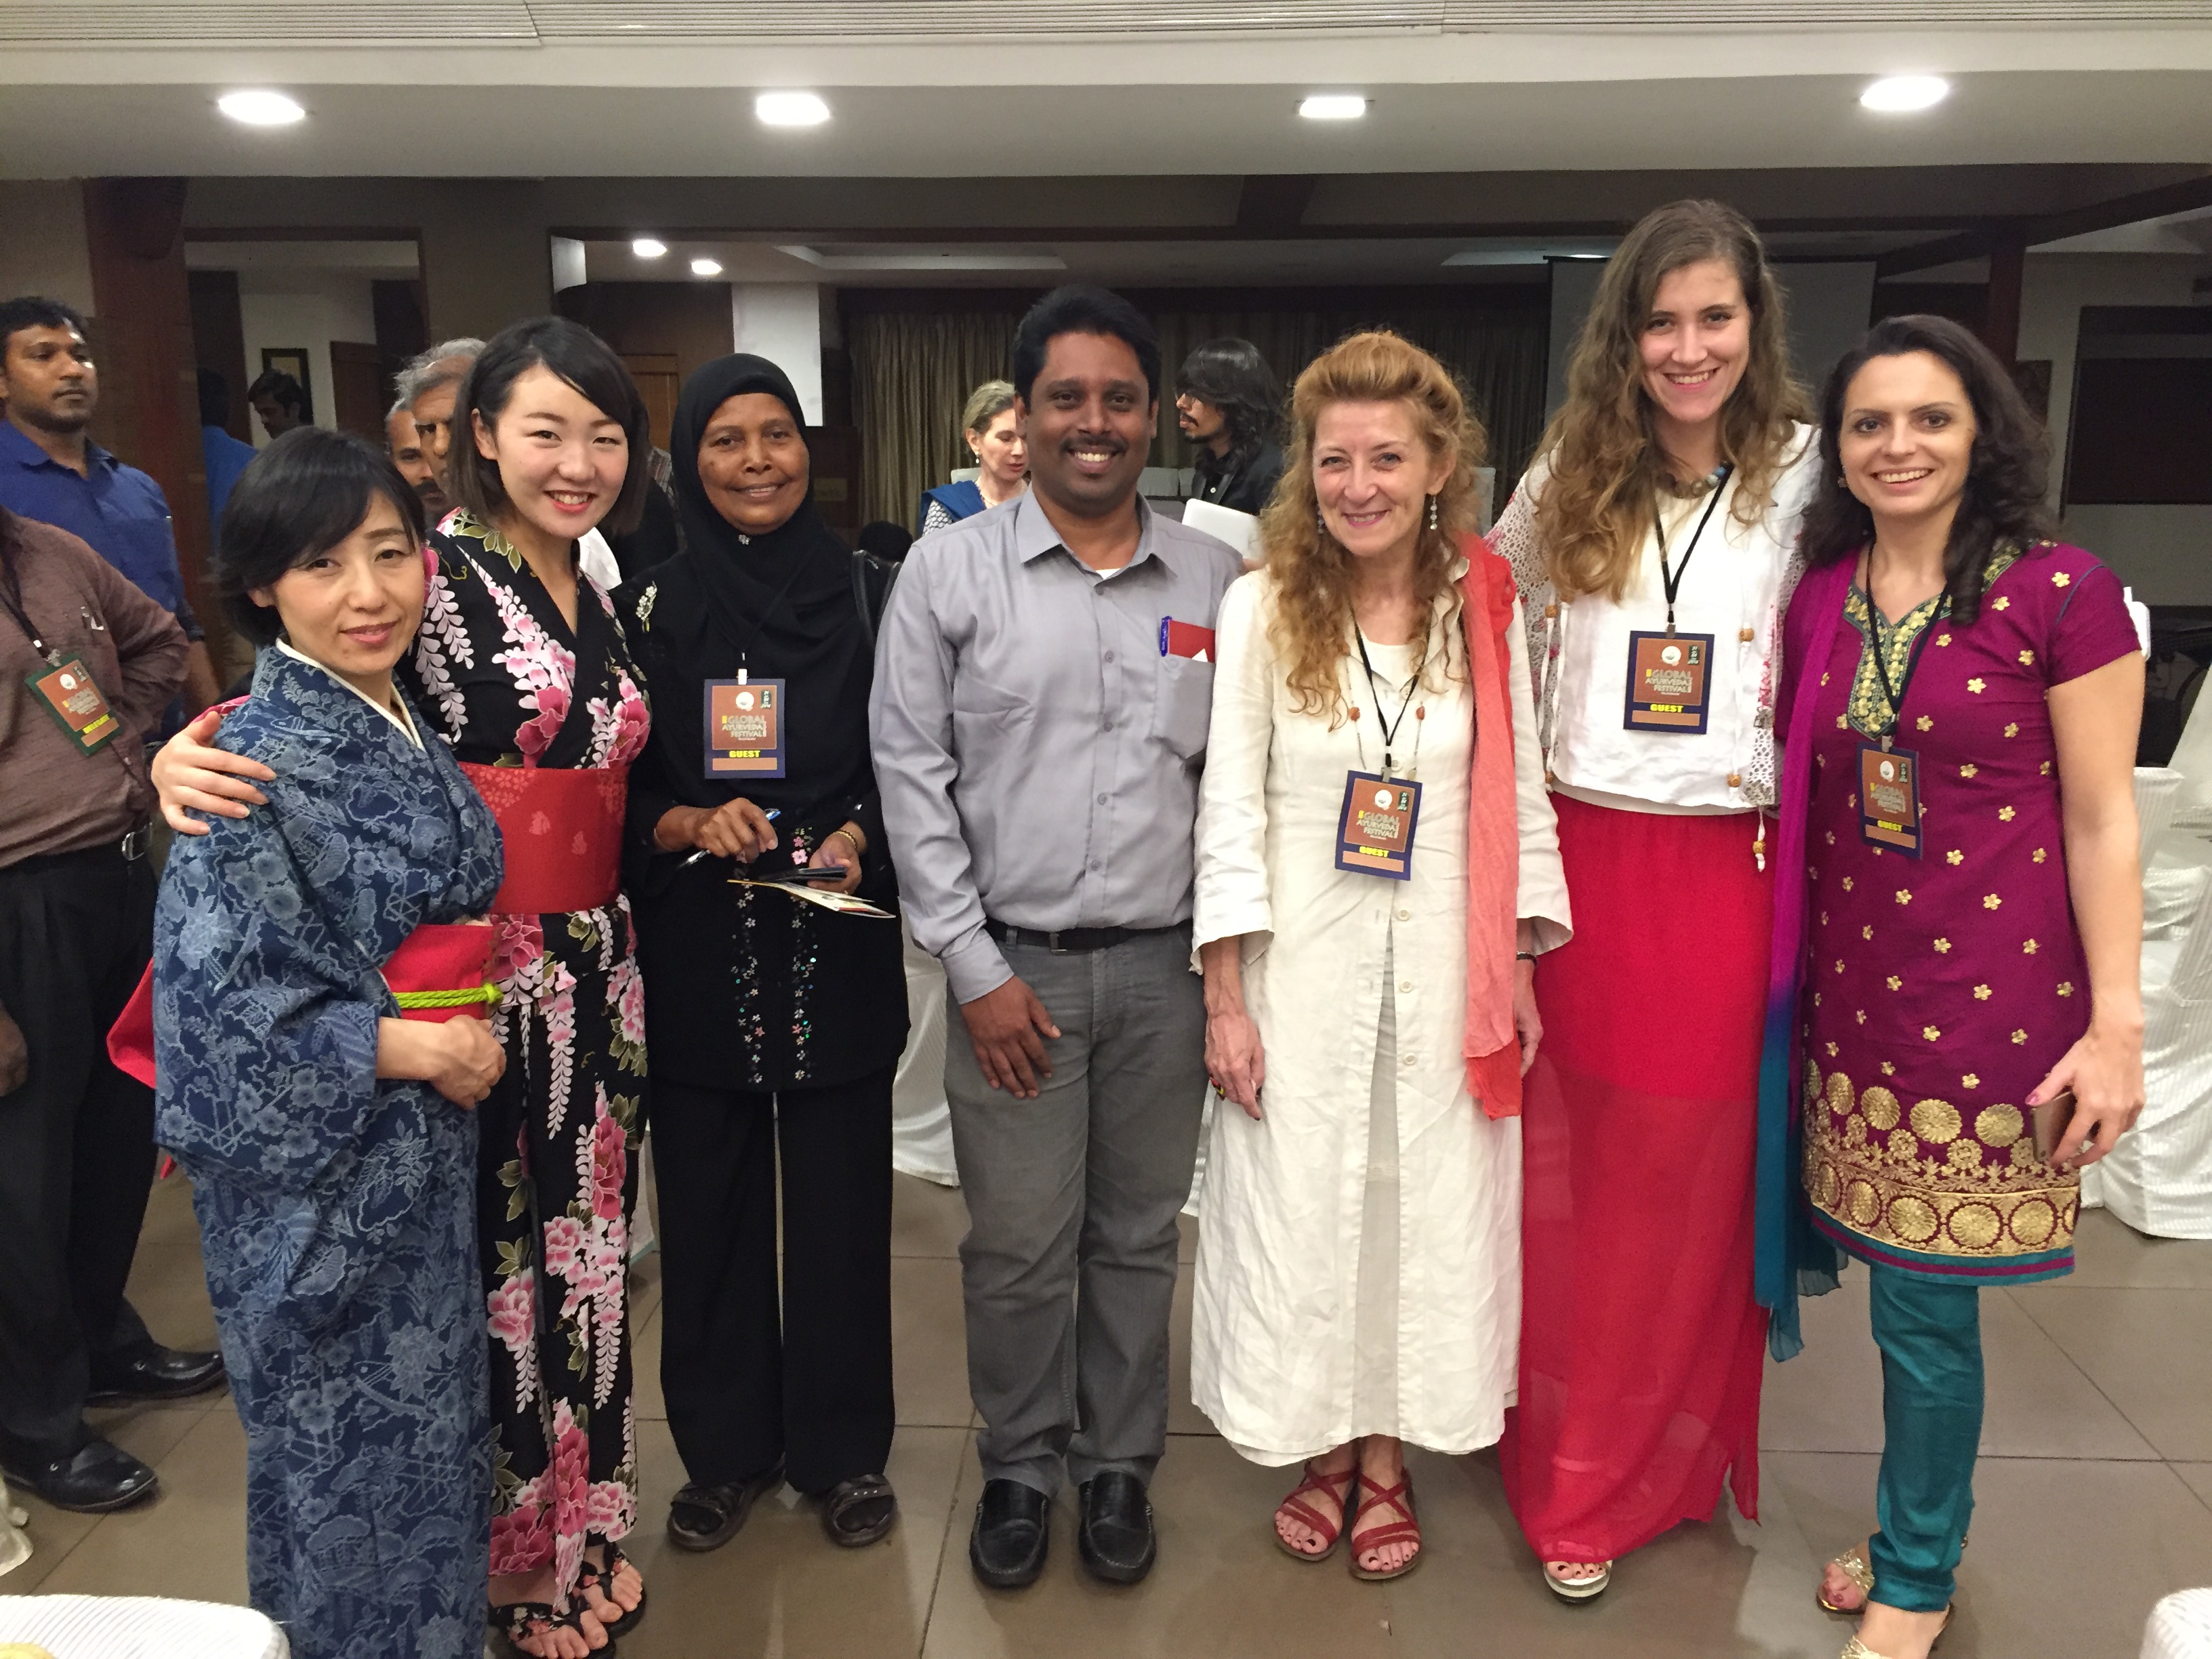 国際ホリスティックヘッドケア協会は、インドの政府主催のイベント「Global Ayurveda Festivalグローバルアーユルヴェーダフェスティバル」に日本代表として参加し、2021年度もオンラインにて参加させていただきます。日本で安全に安心してアーユルヴェーダを広める活動を心がけています。